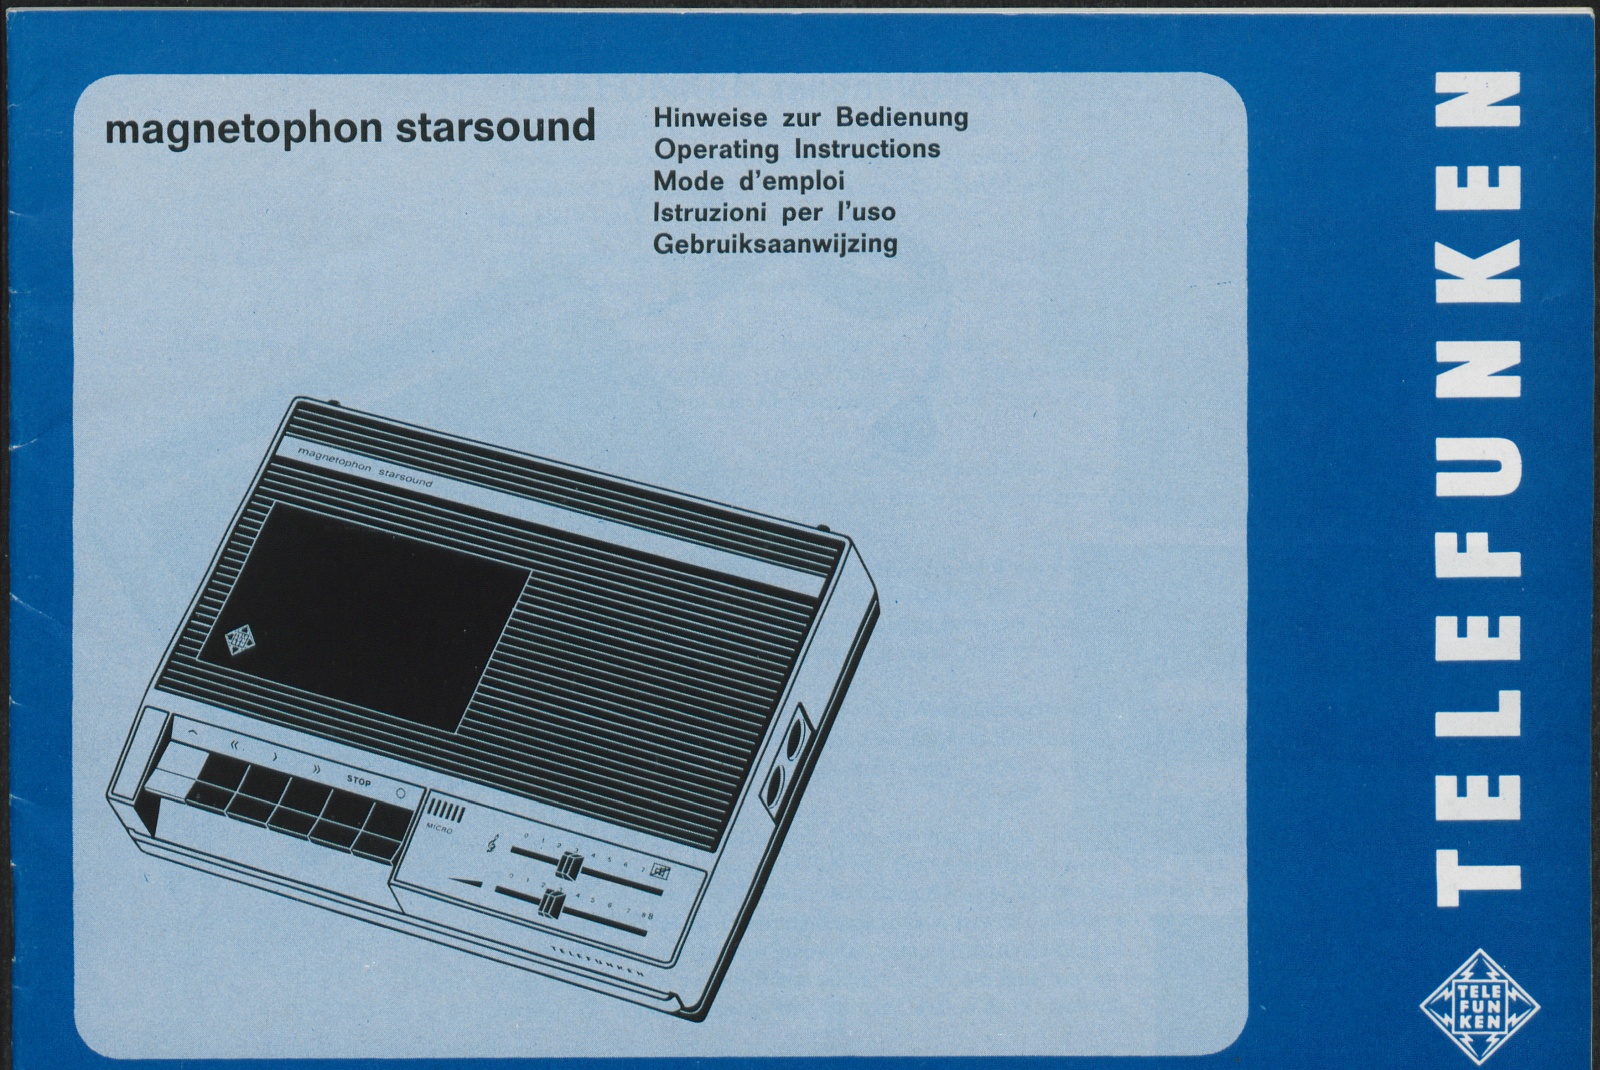 Bedienungsanleitung: Hinweise zur Bedienung Telefunken magnetophon starsound (Stiftung Deutsches Technikmuseum Berlin CC0)